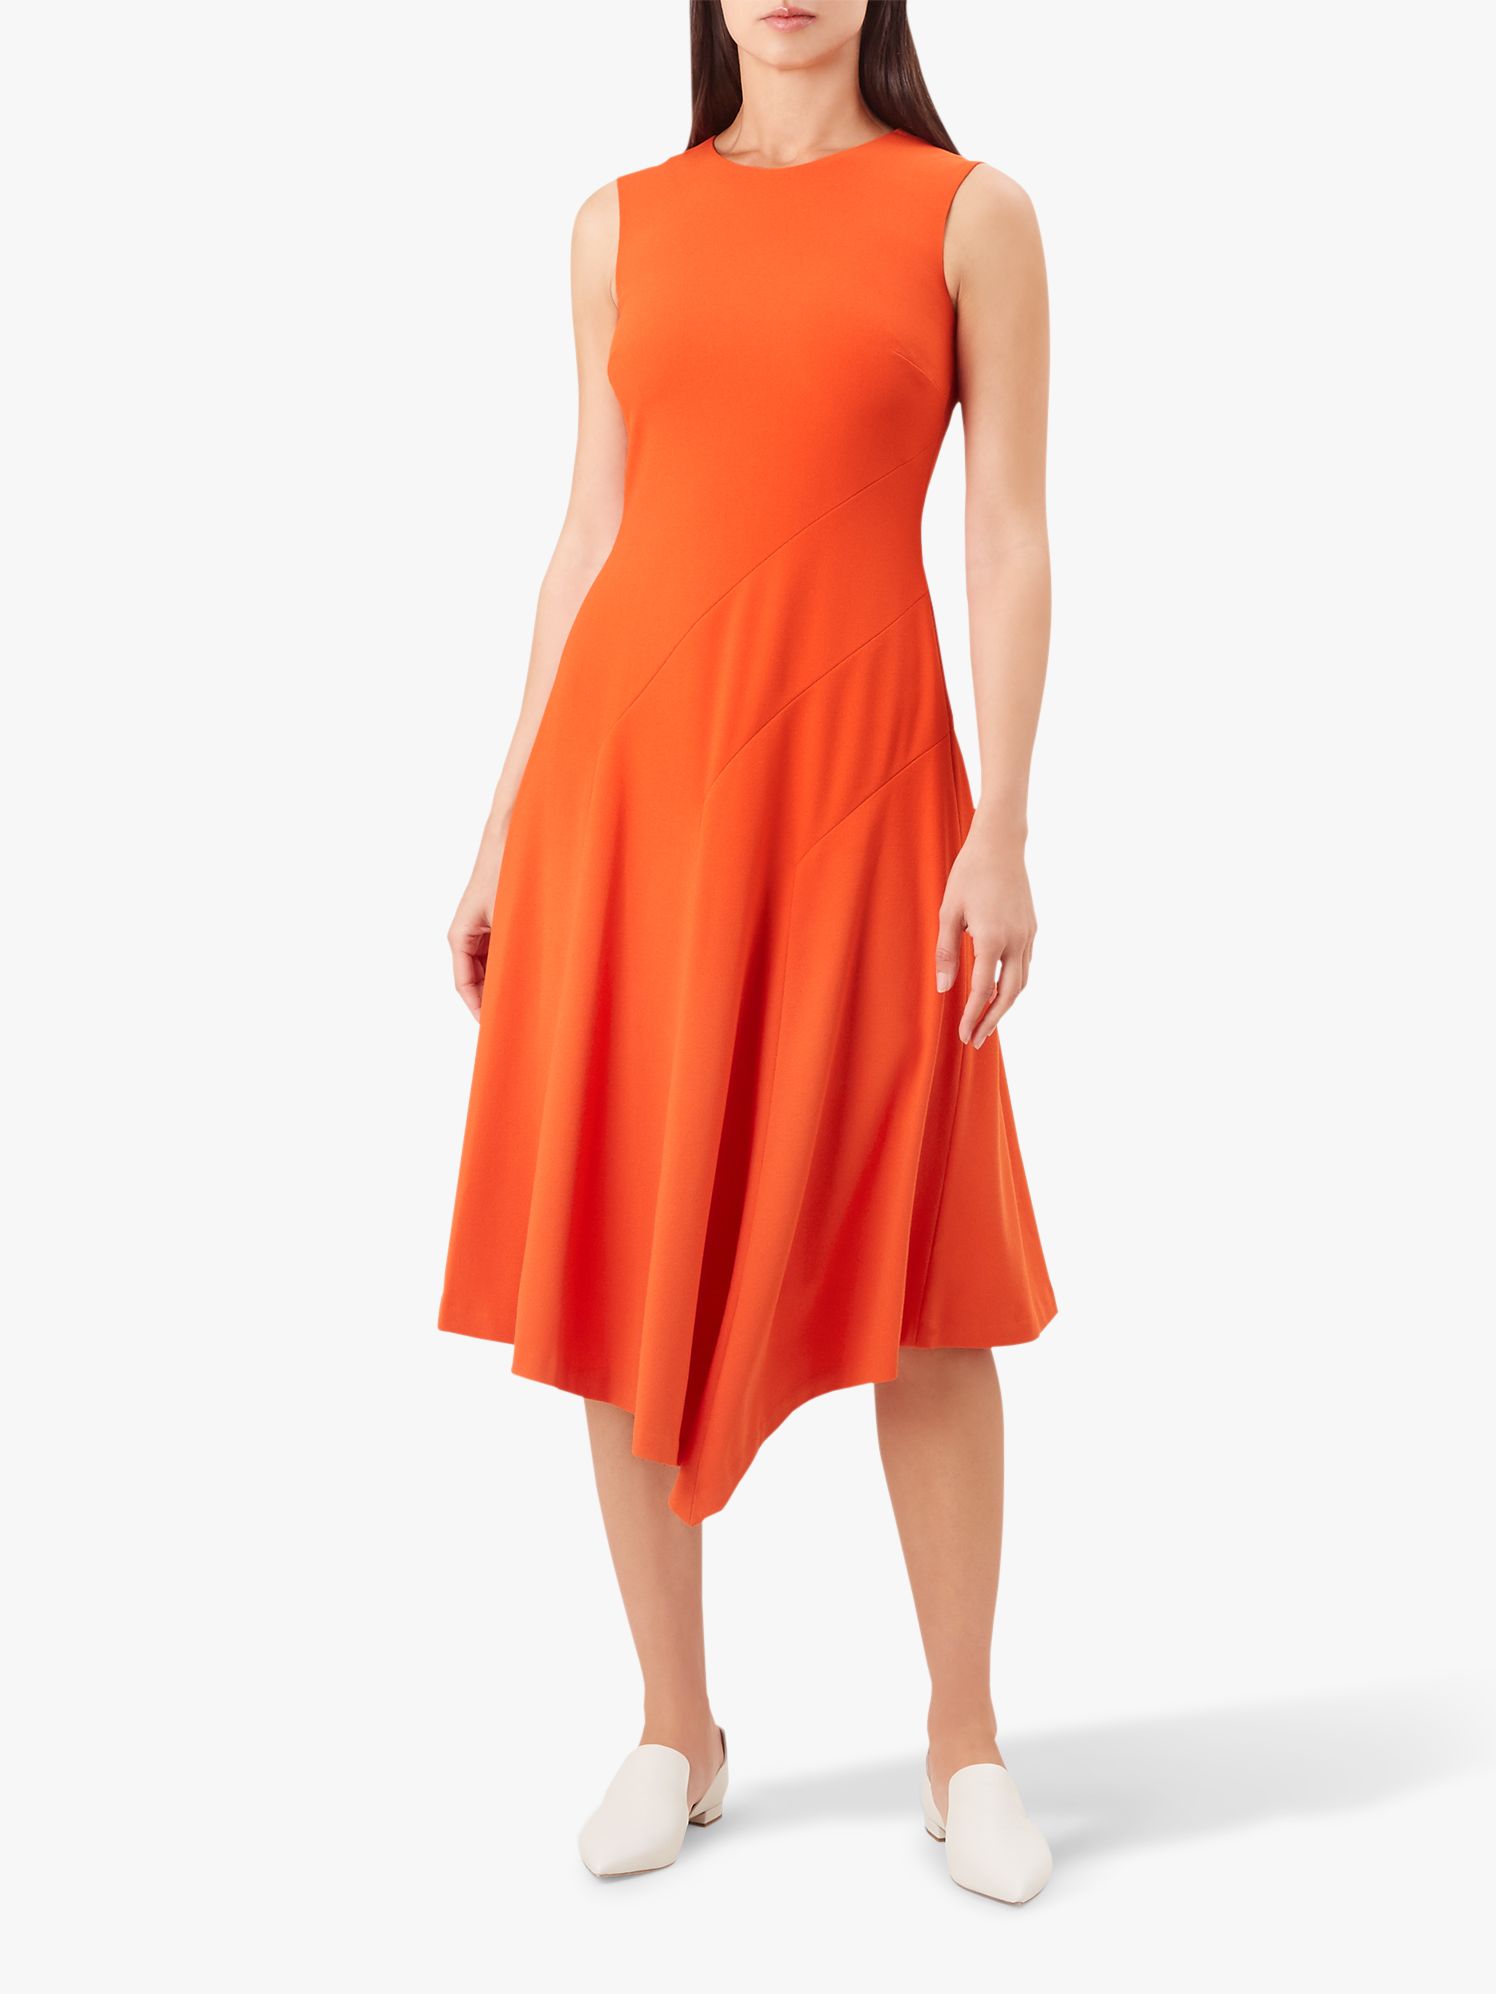 Hobbs Anya Dress, Burnt Orange at John Lewis & Partners